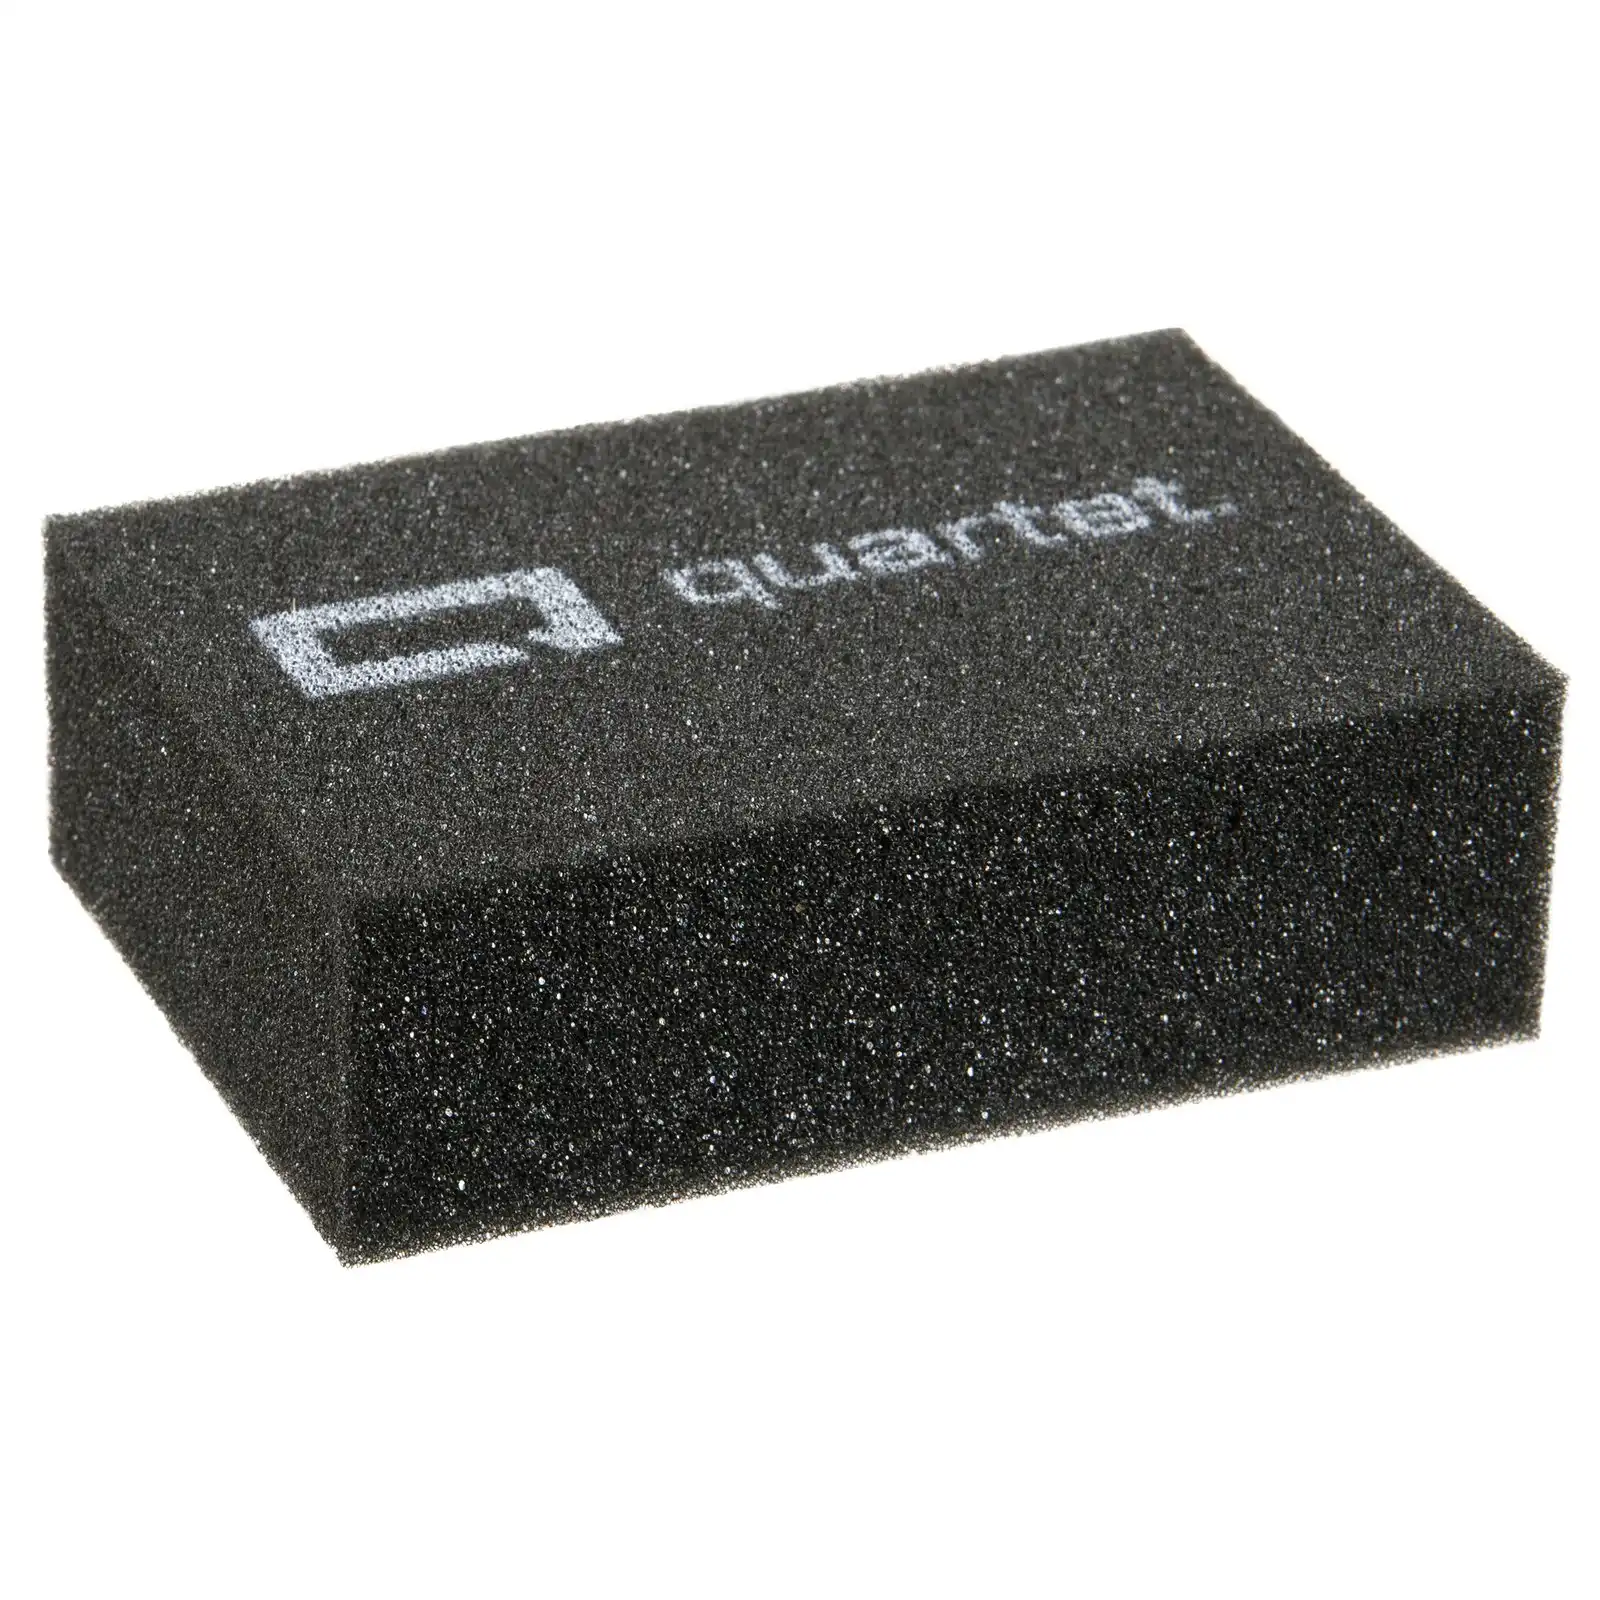 30PK Quartet Foam Eraser Cleaner For Flex Dry-Erase Writing Boards Charcoal